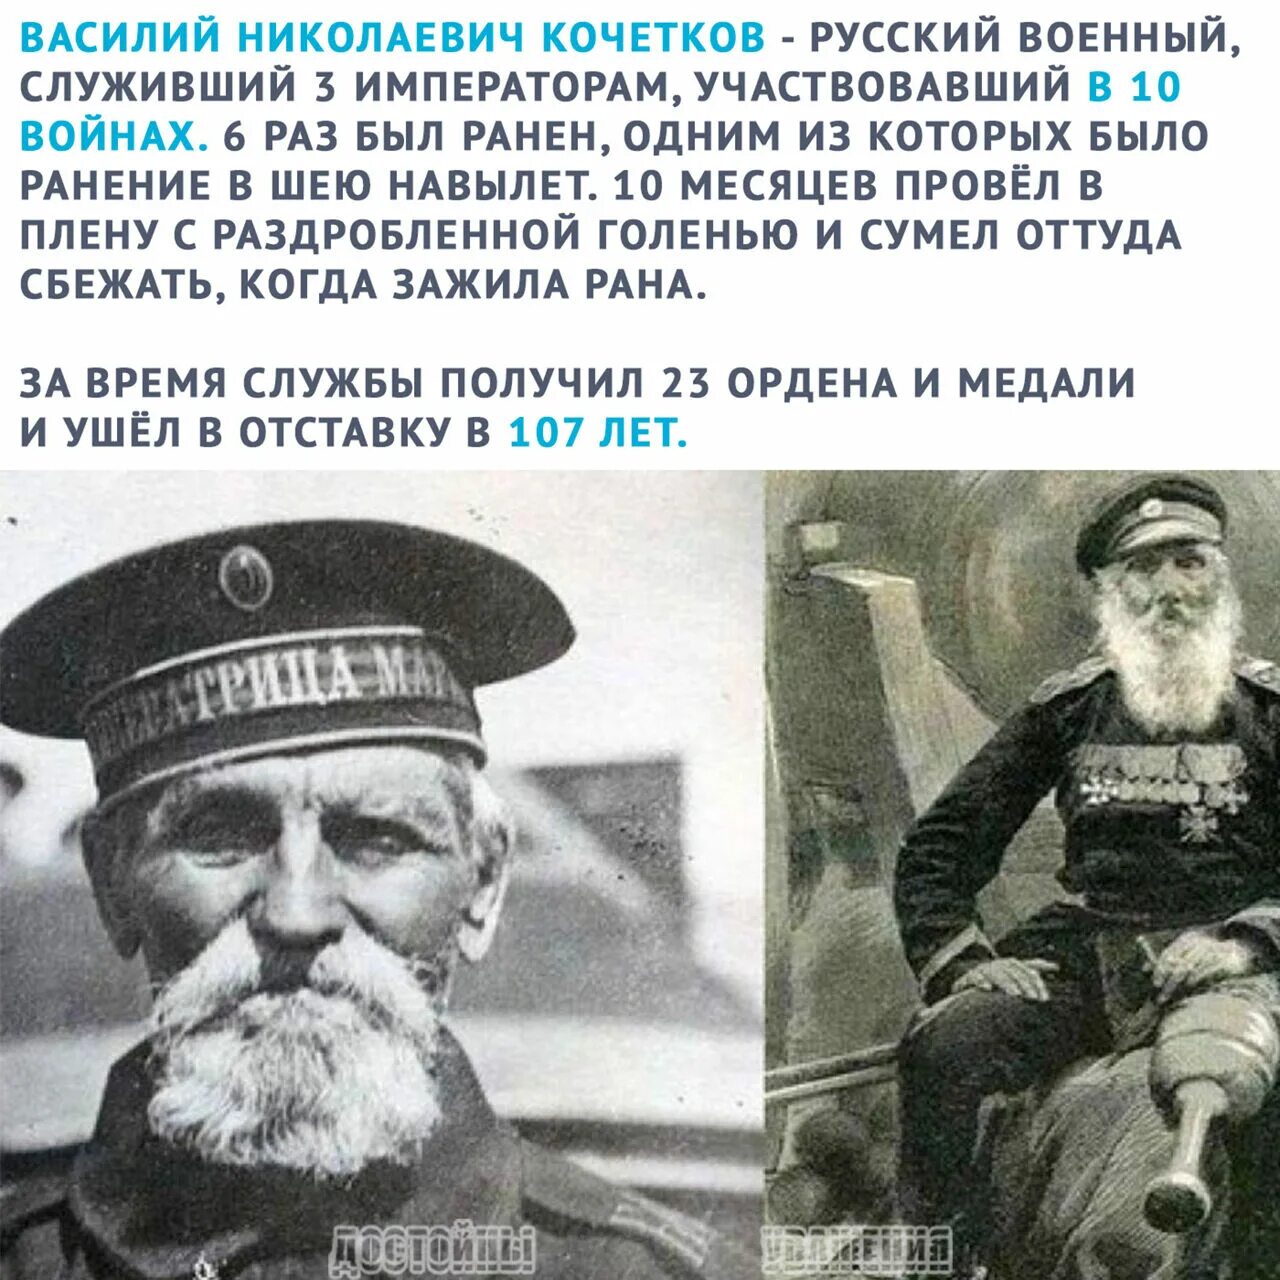 Сколько было лет василию. Самый старый солдат Российской империи Кочетков.